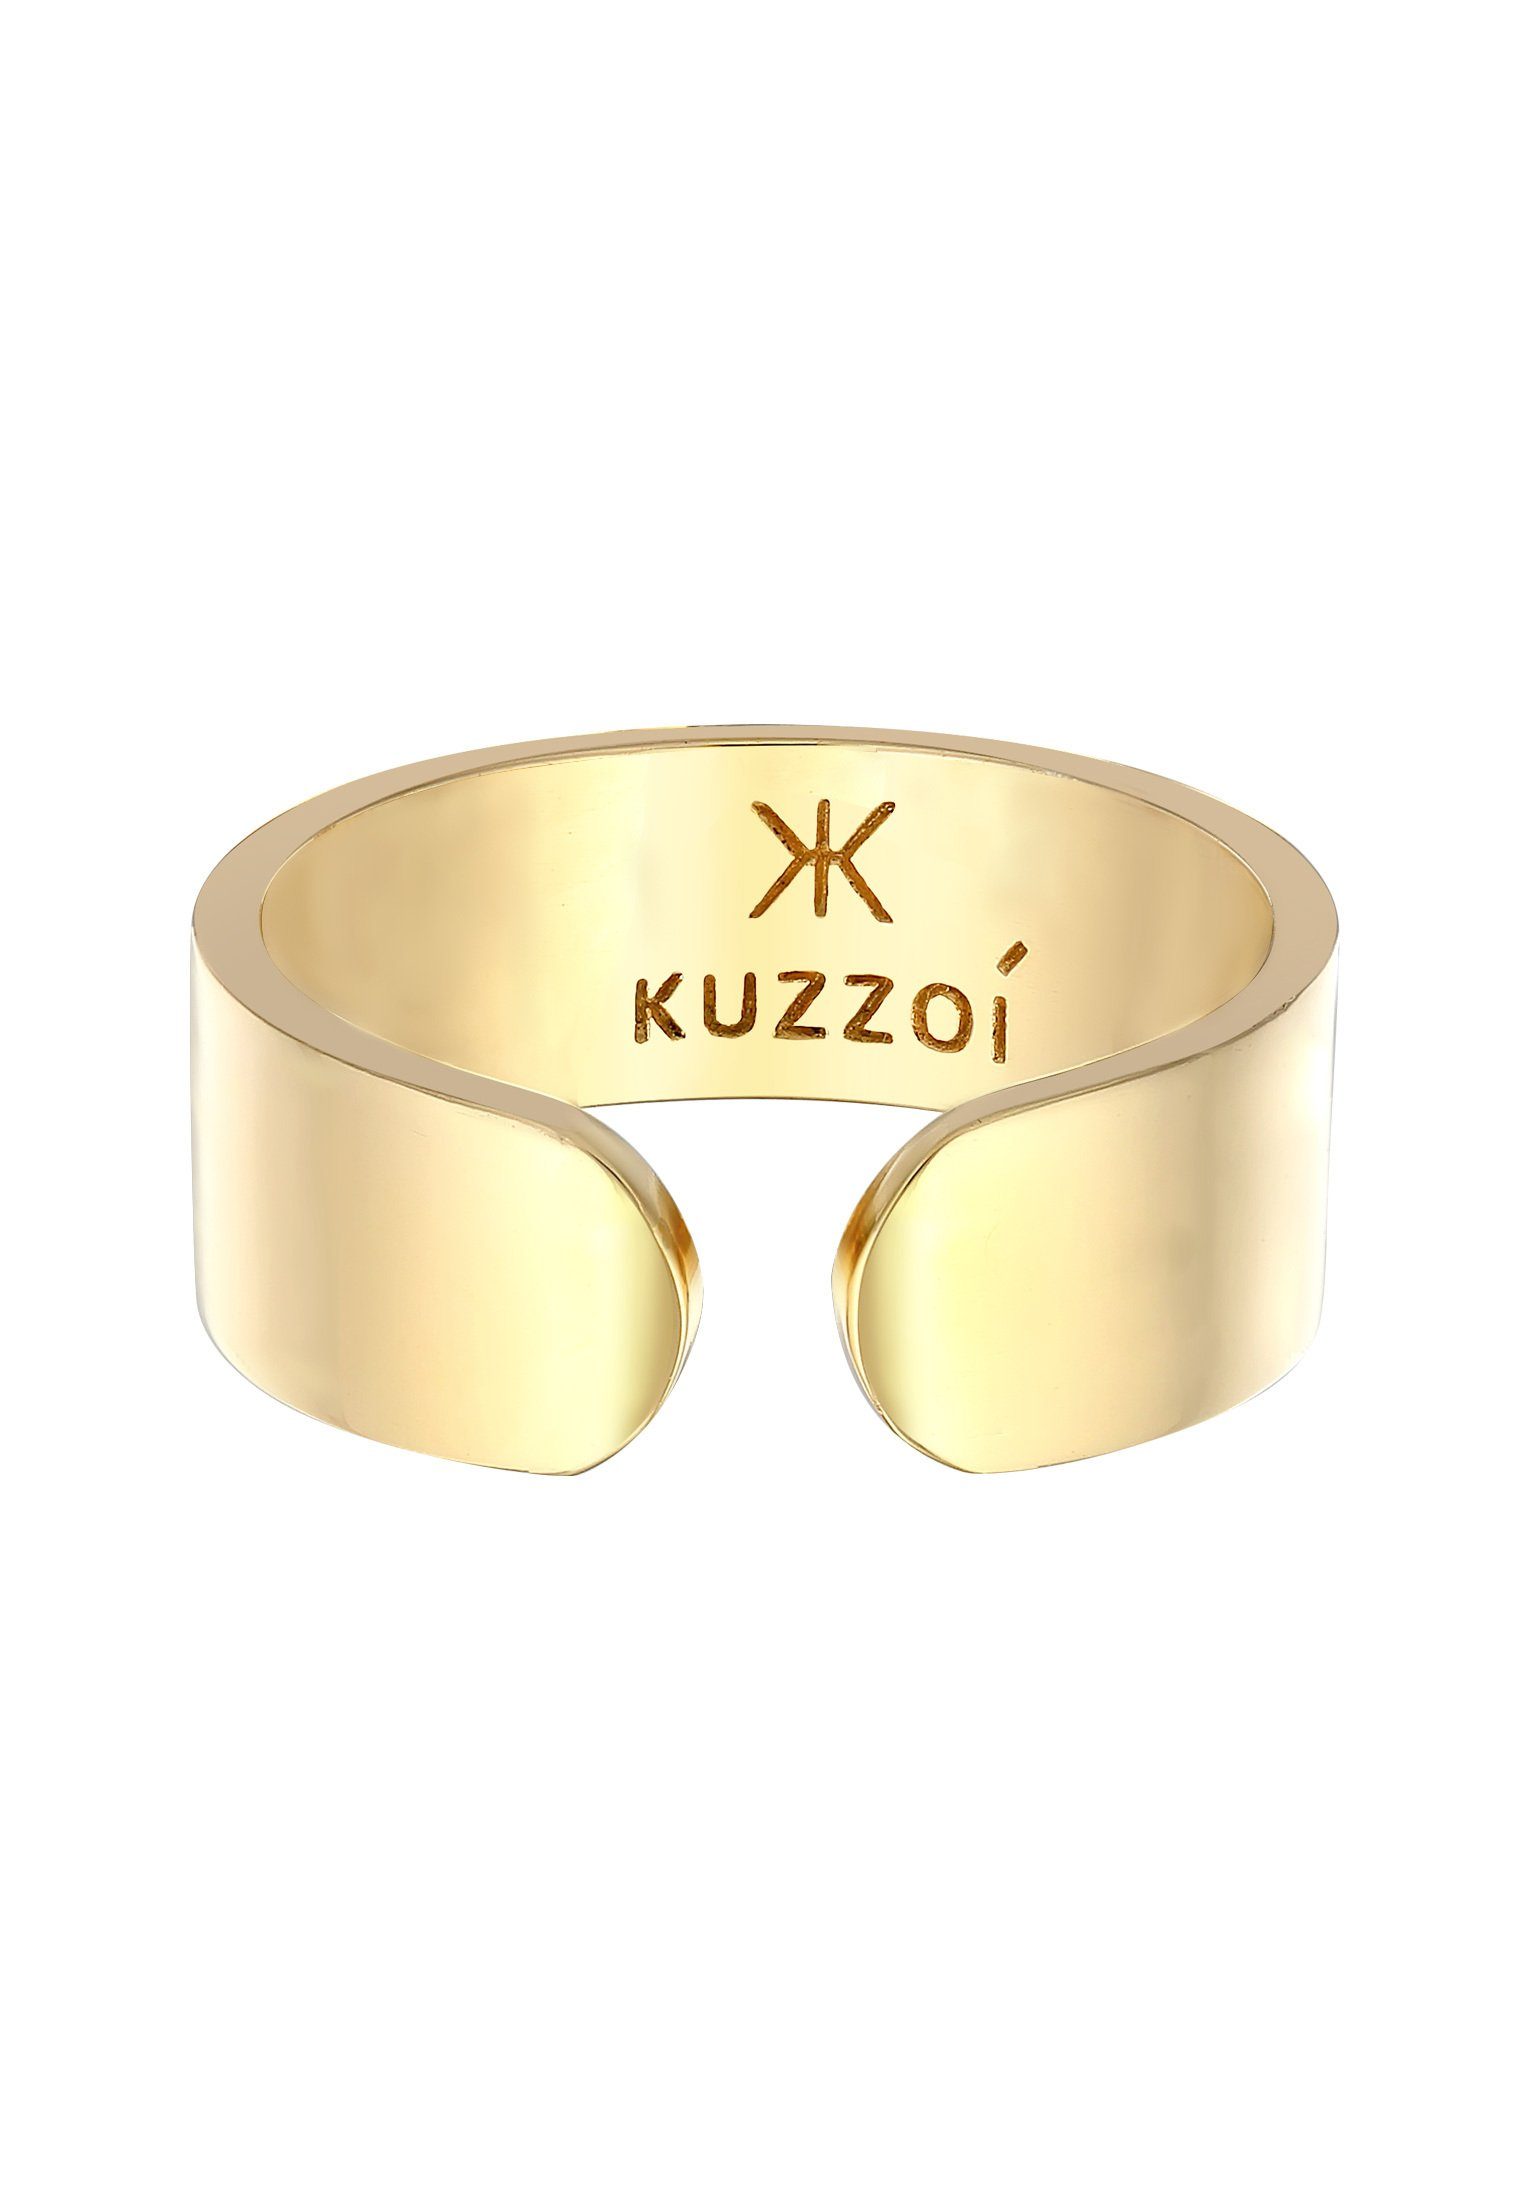 Kuzzoi Silberring Bandring Klares Design 925 Gold Silber Offen